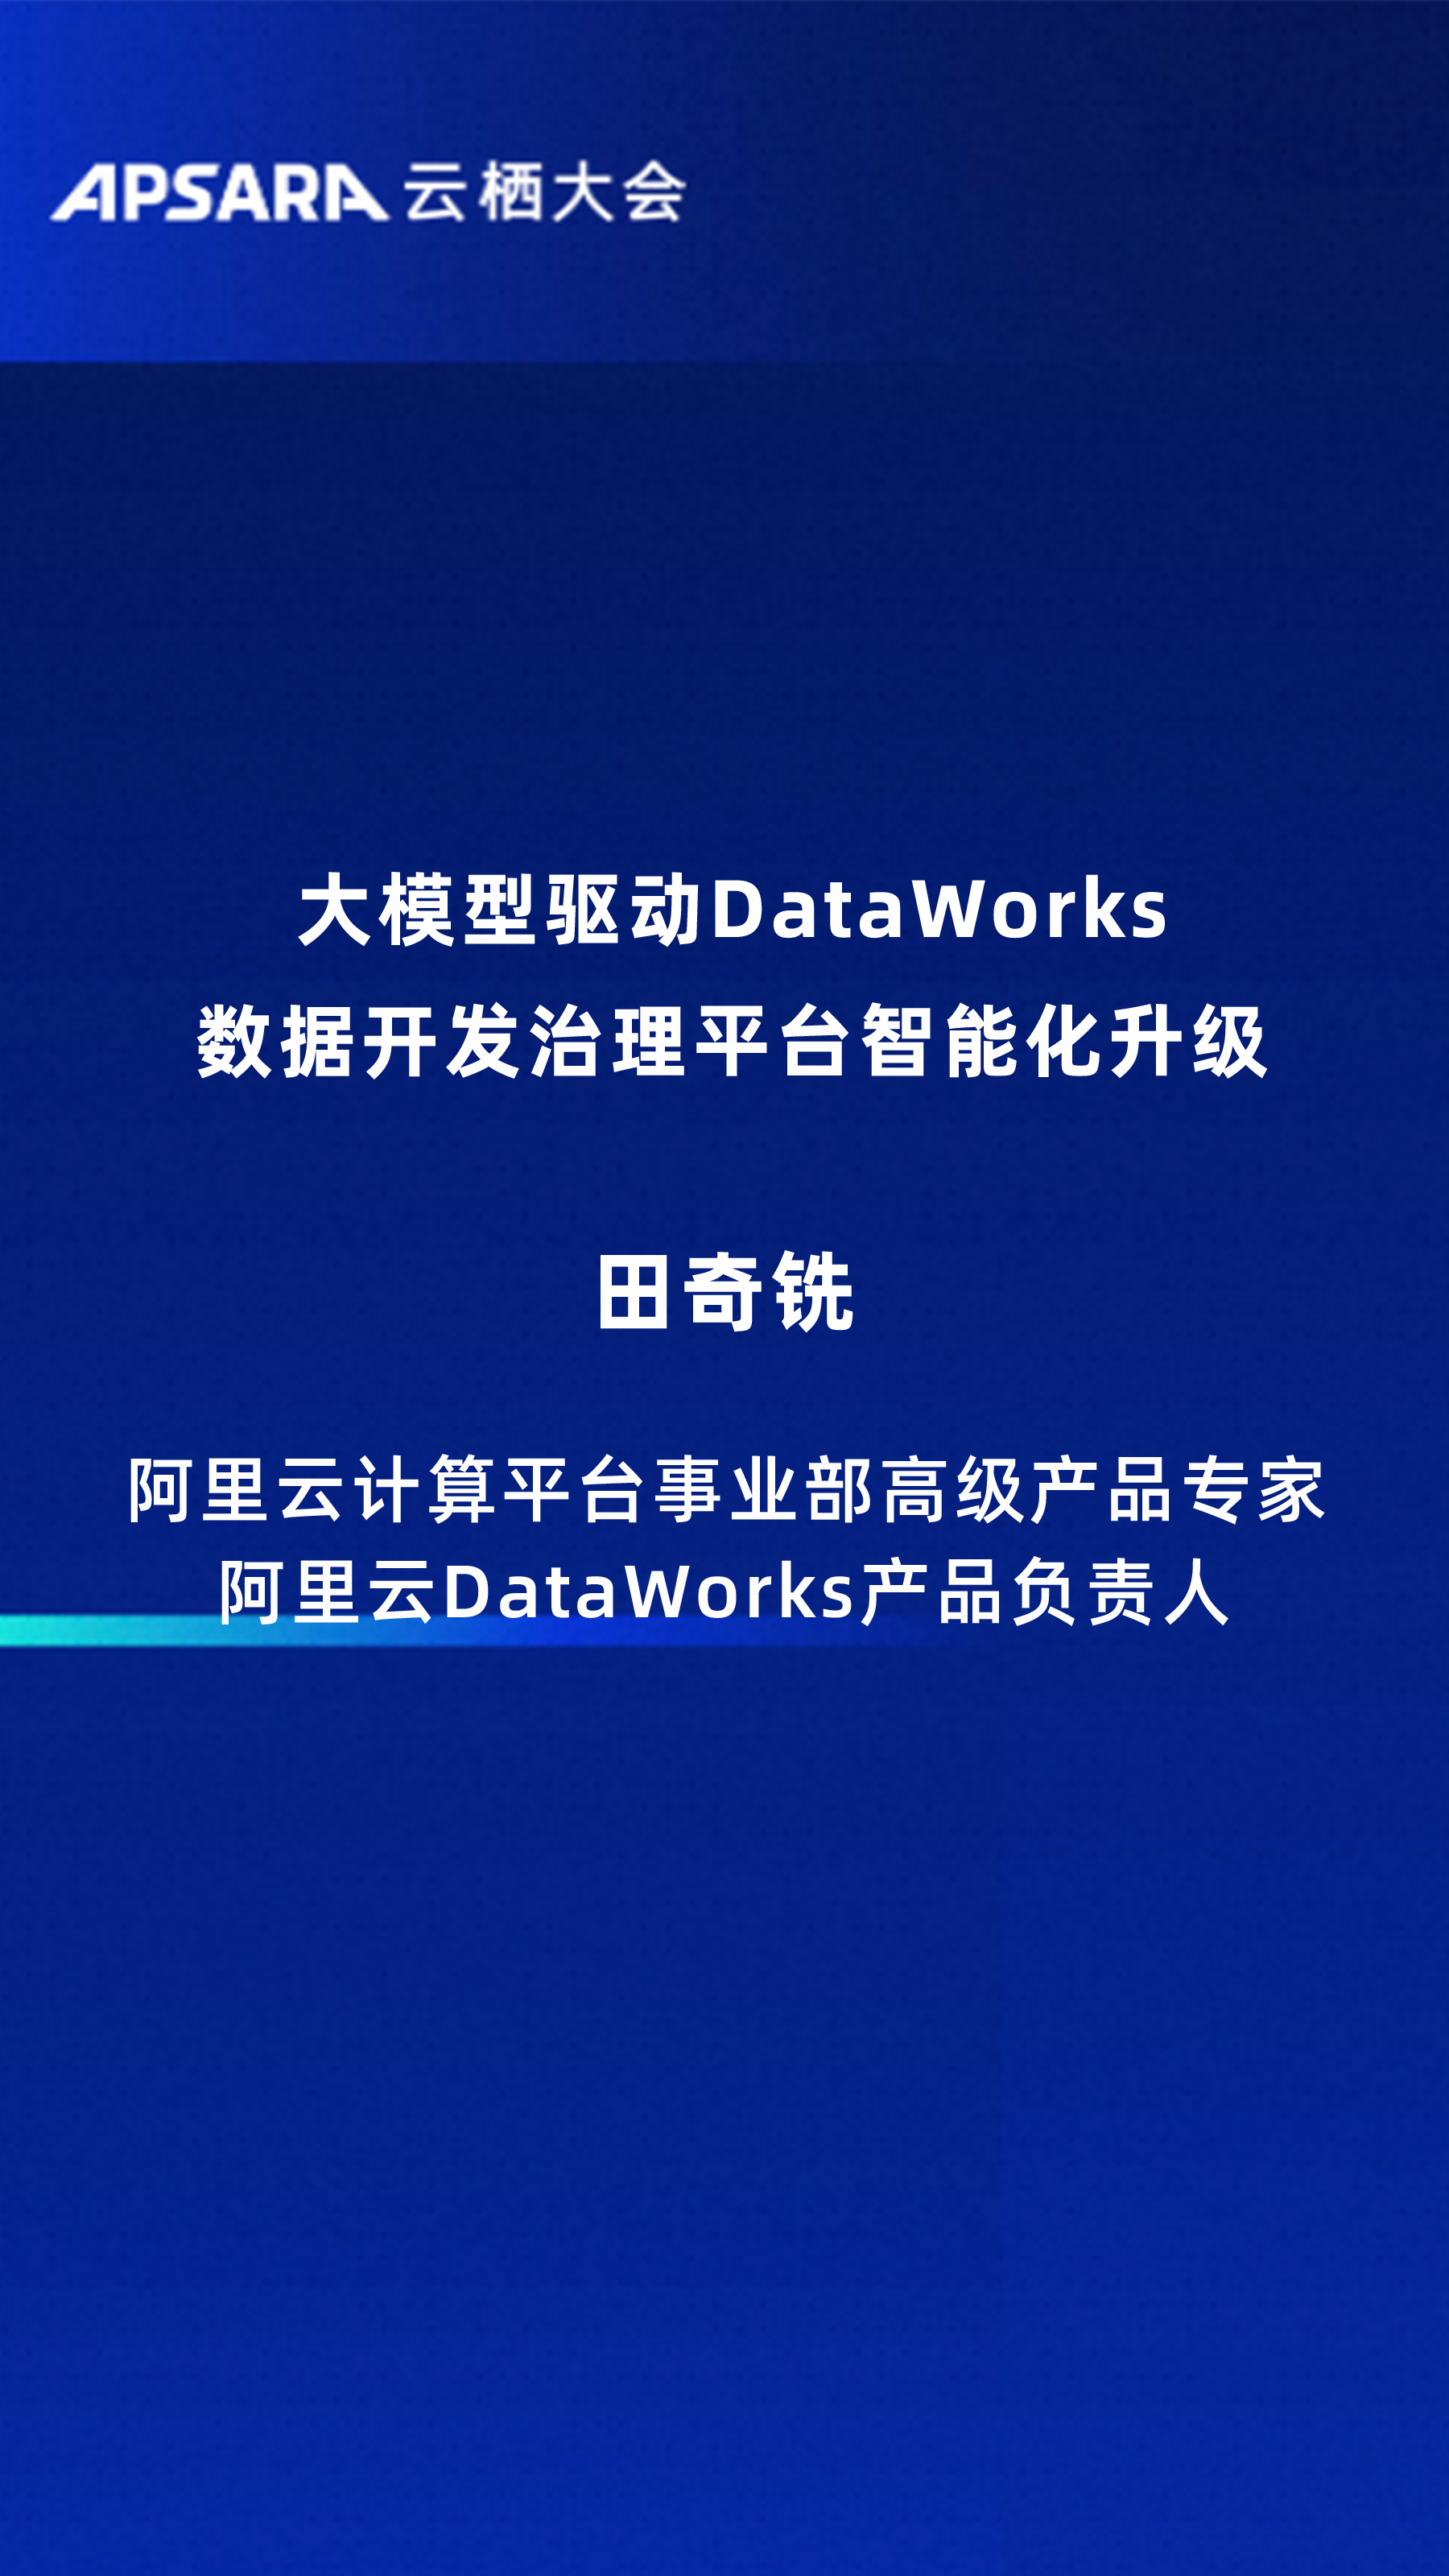 大模型驱动DataWorks数据开发治理平台智能化升级